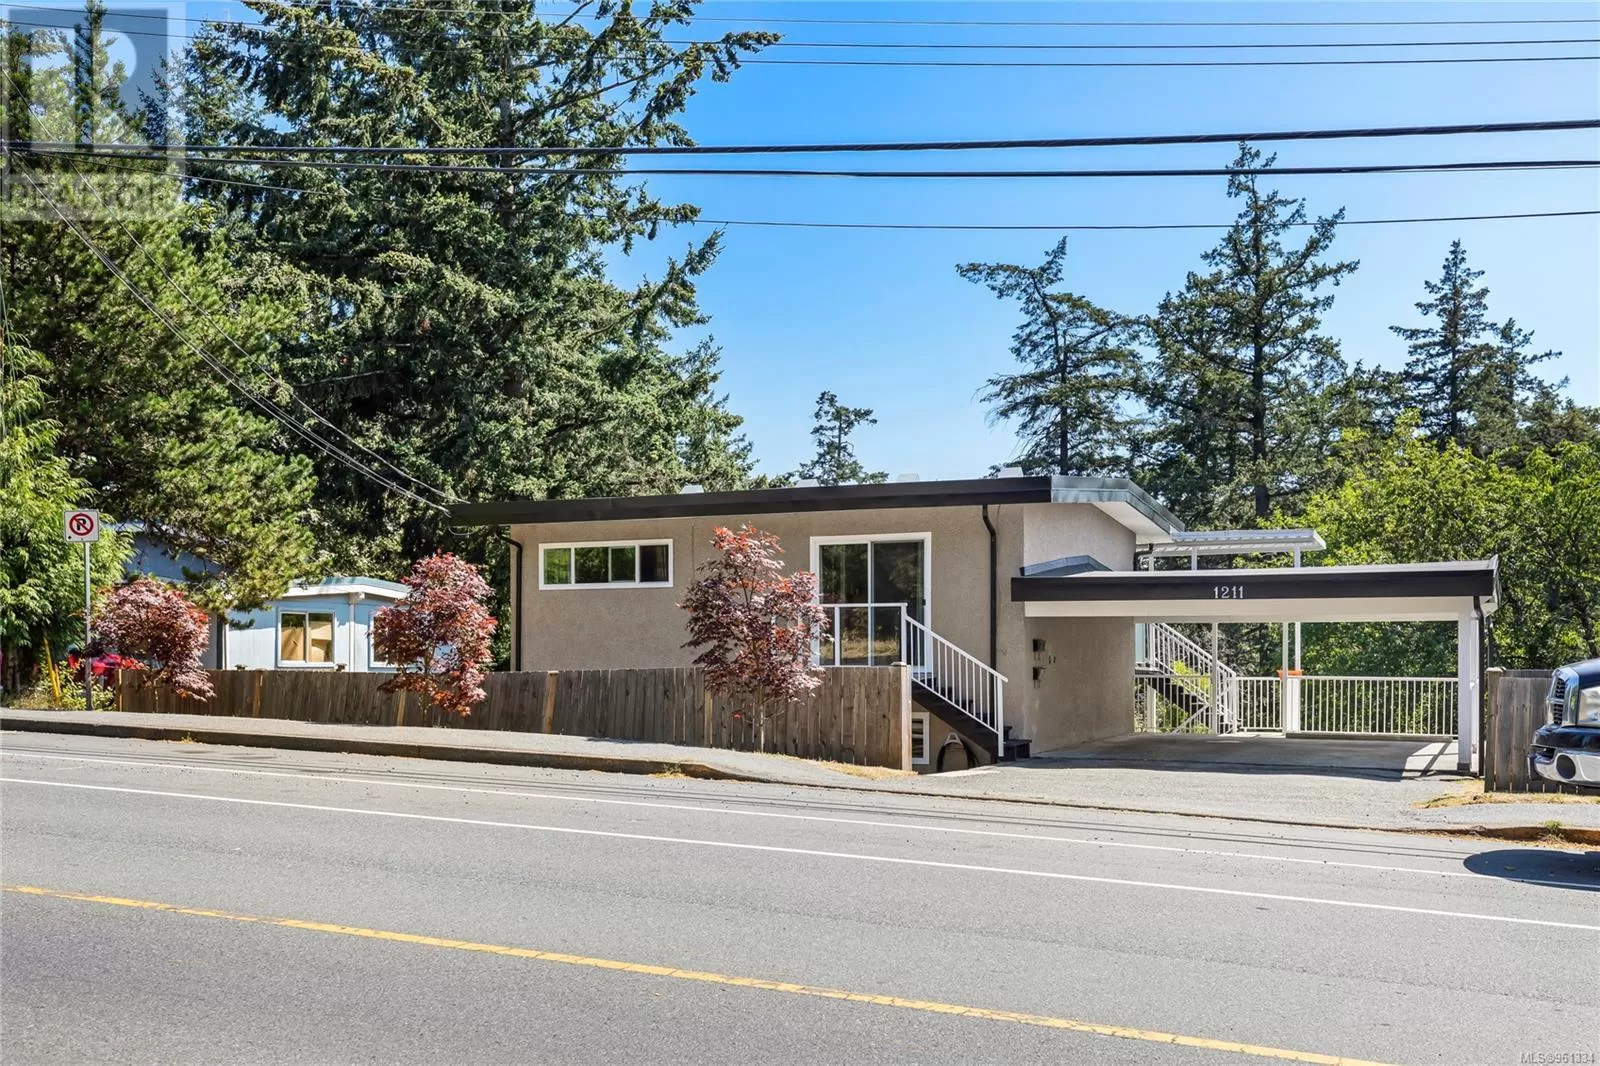 Duplex for rent: 1211 Bush St, Nanaimo, British Columbia V9S 1J8